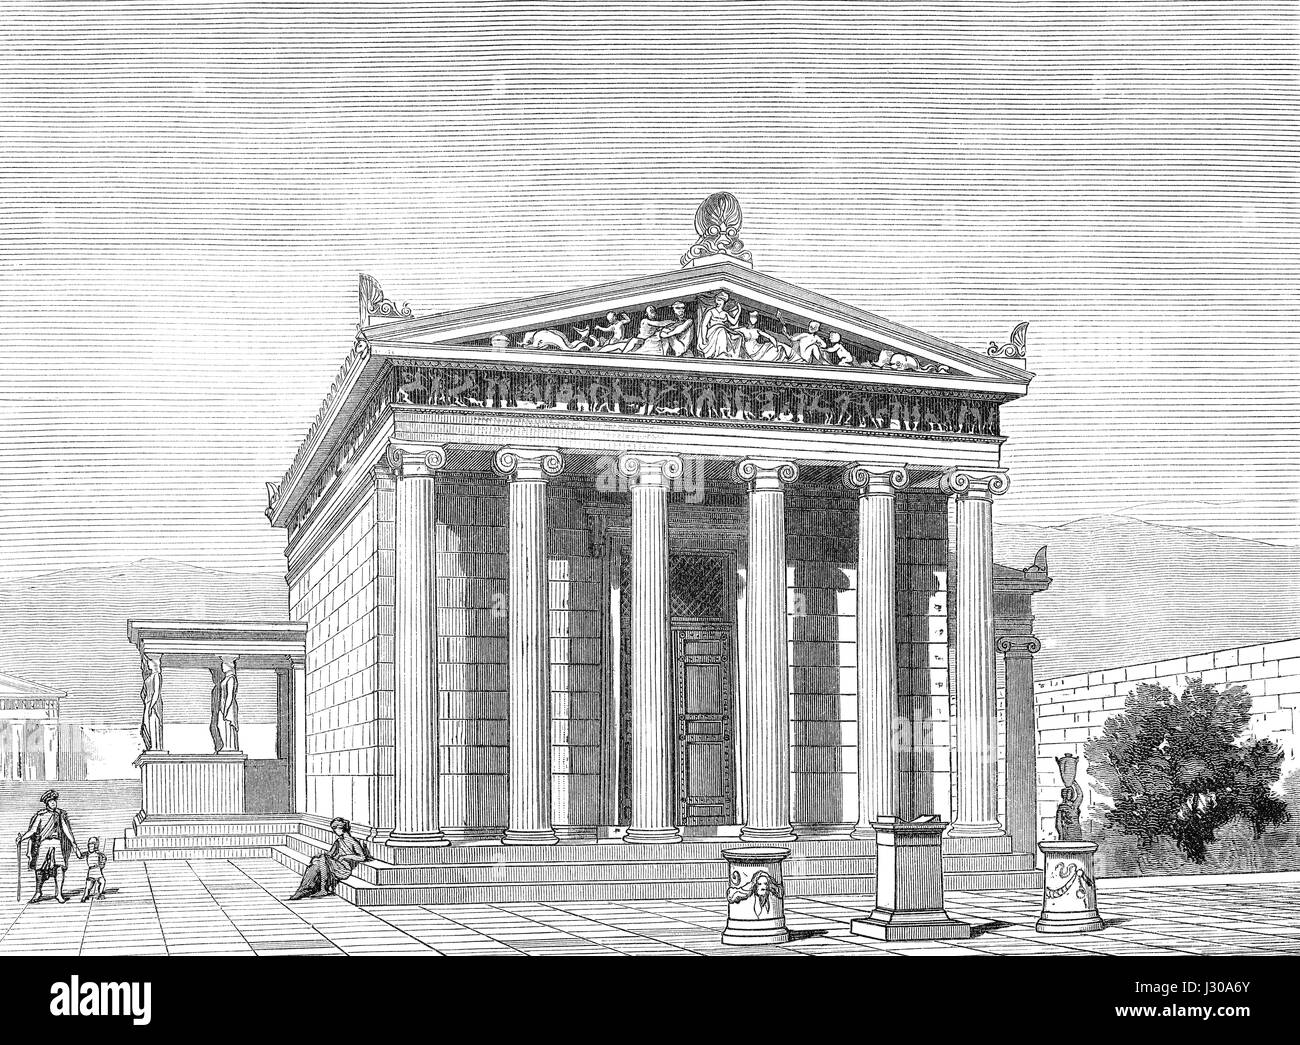 La reconstruction de l'Erechtheion ou Erechtheum, un ancien temple grec sur le côté nord de l'acropole d'Athènes en Grèce, 5e siècle avant J.-C. Banque D'Images